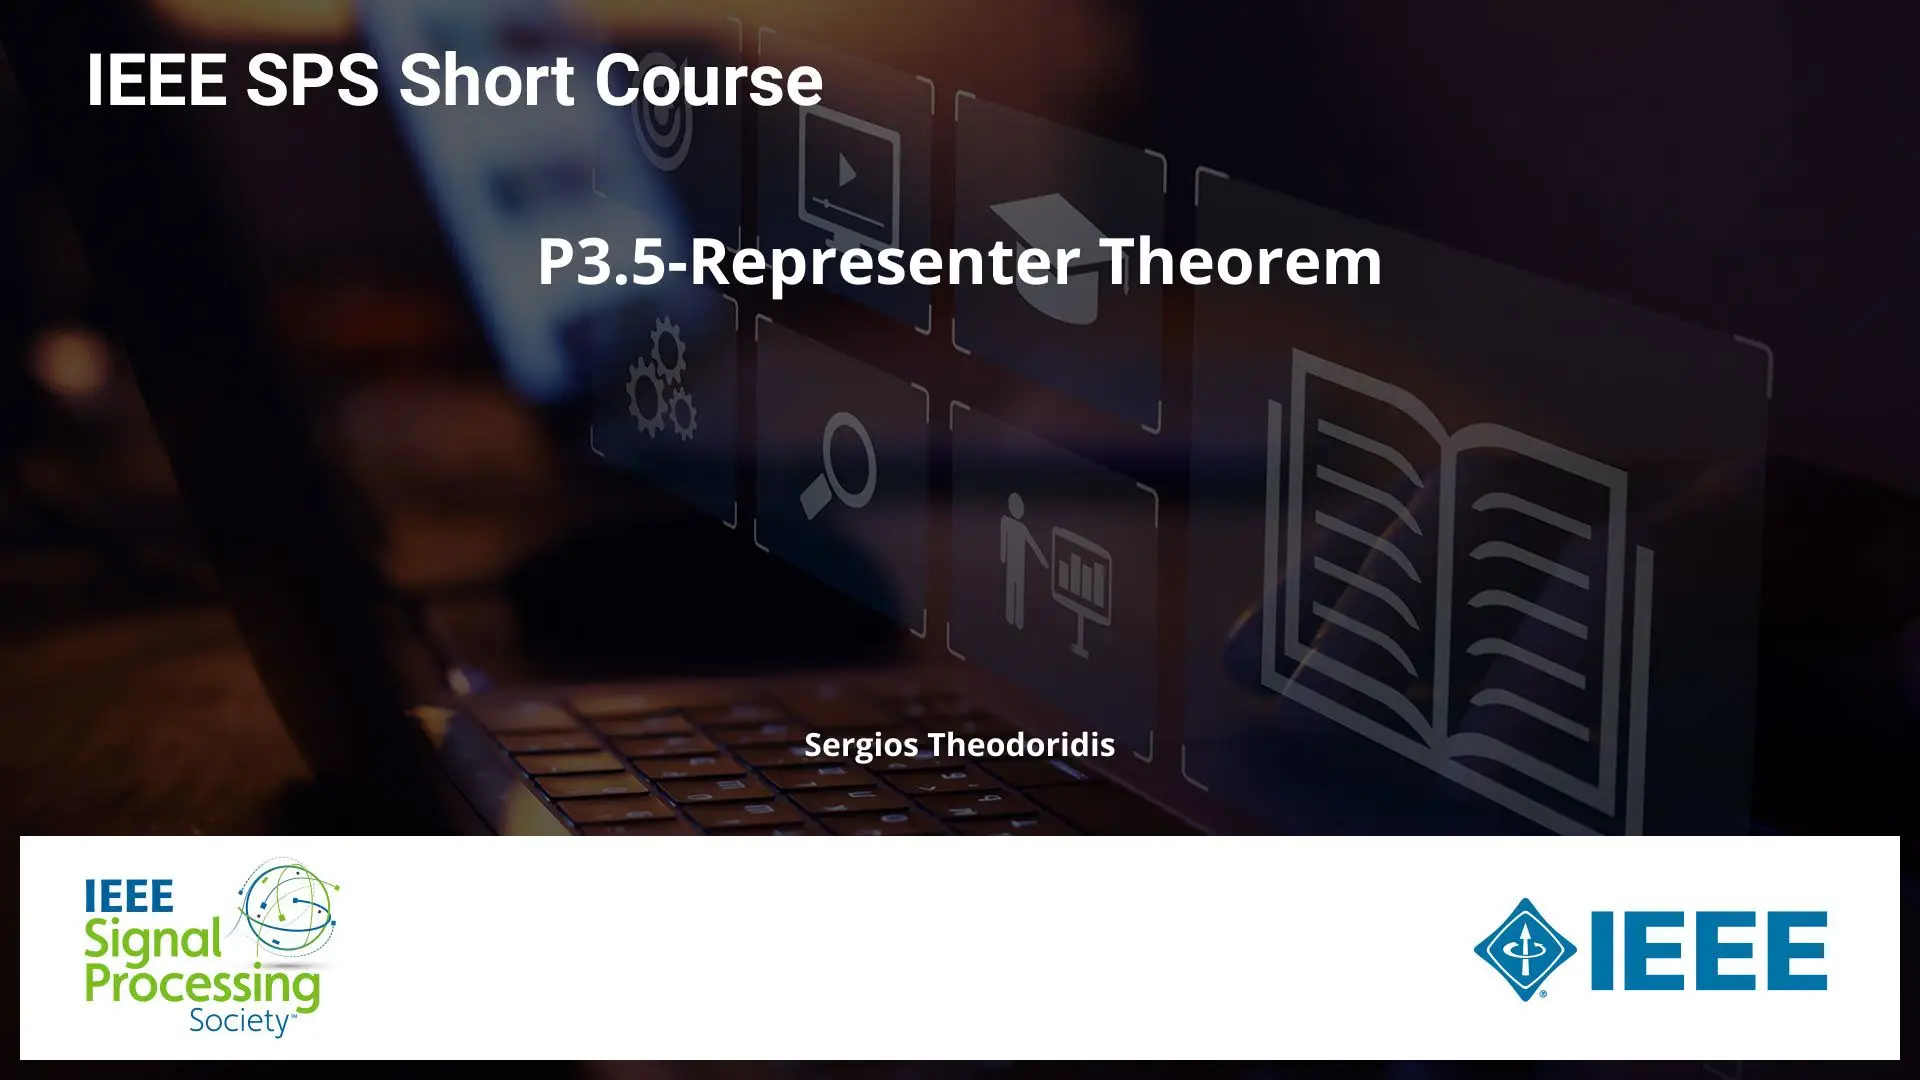 P3.5-Representer Theorem